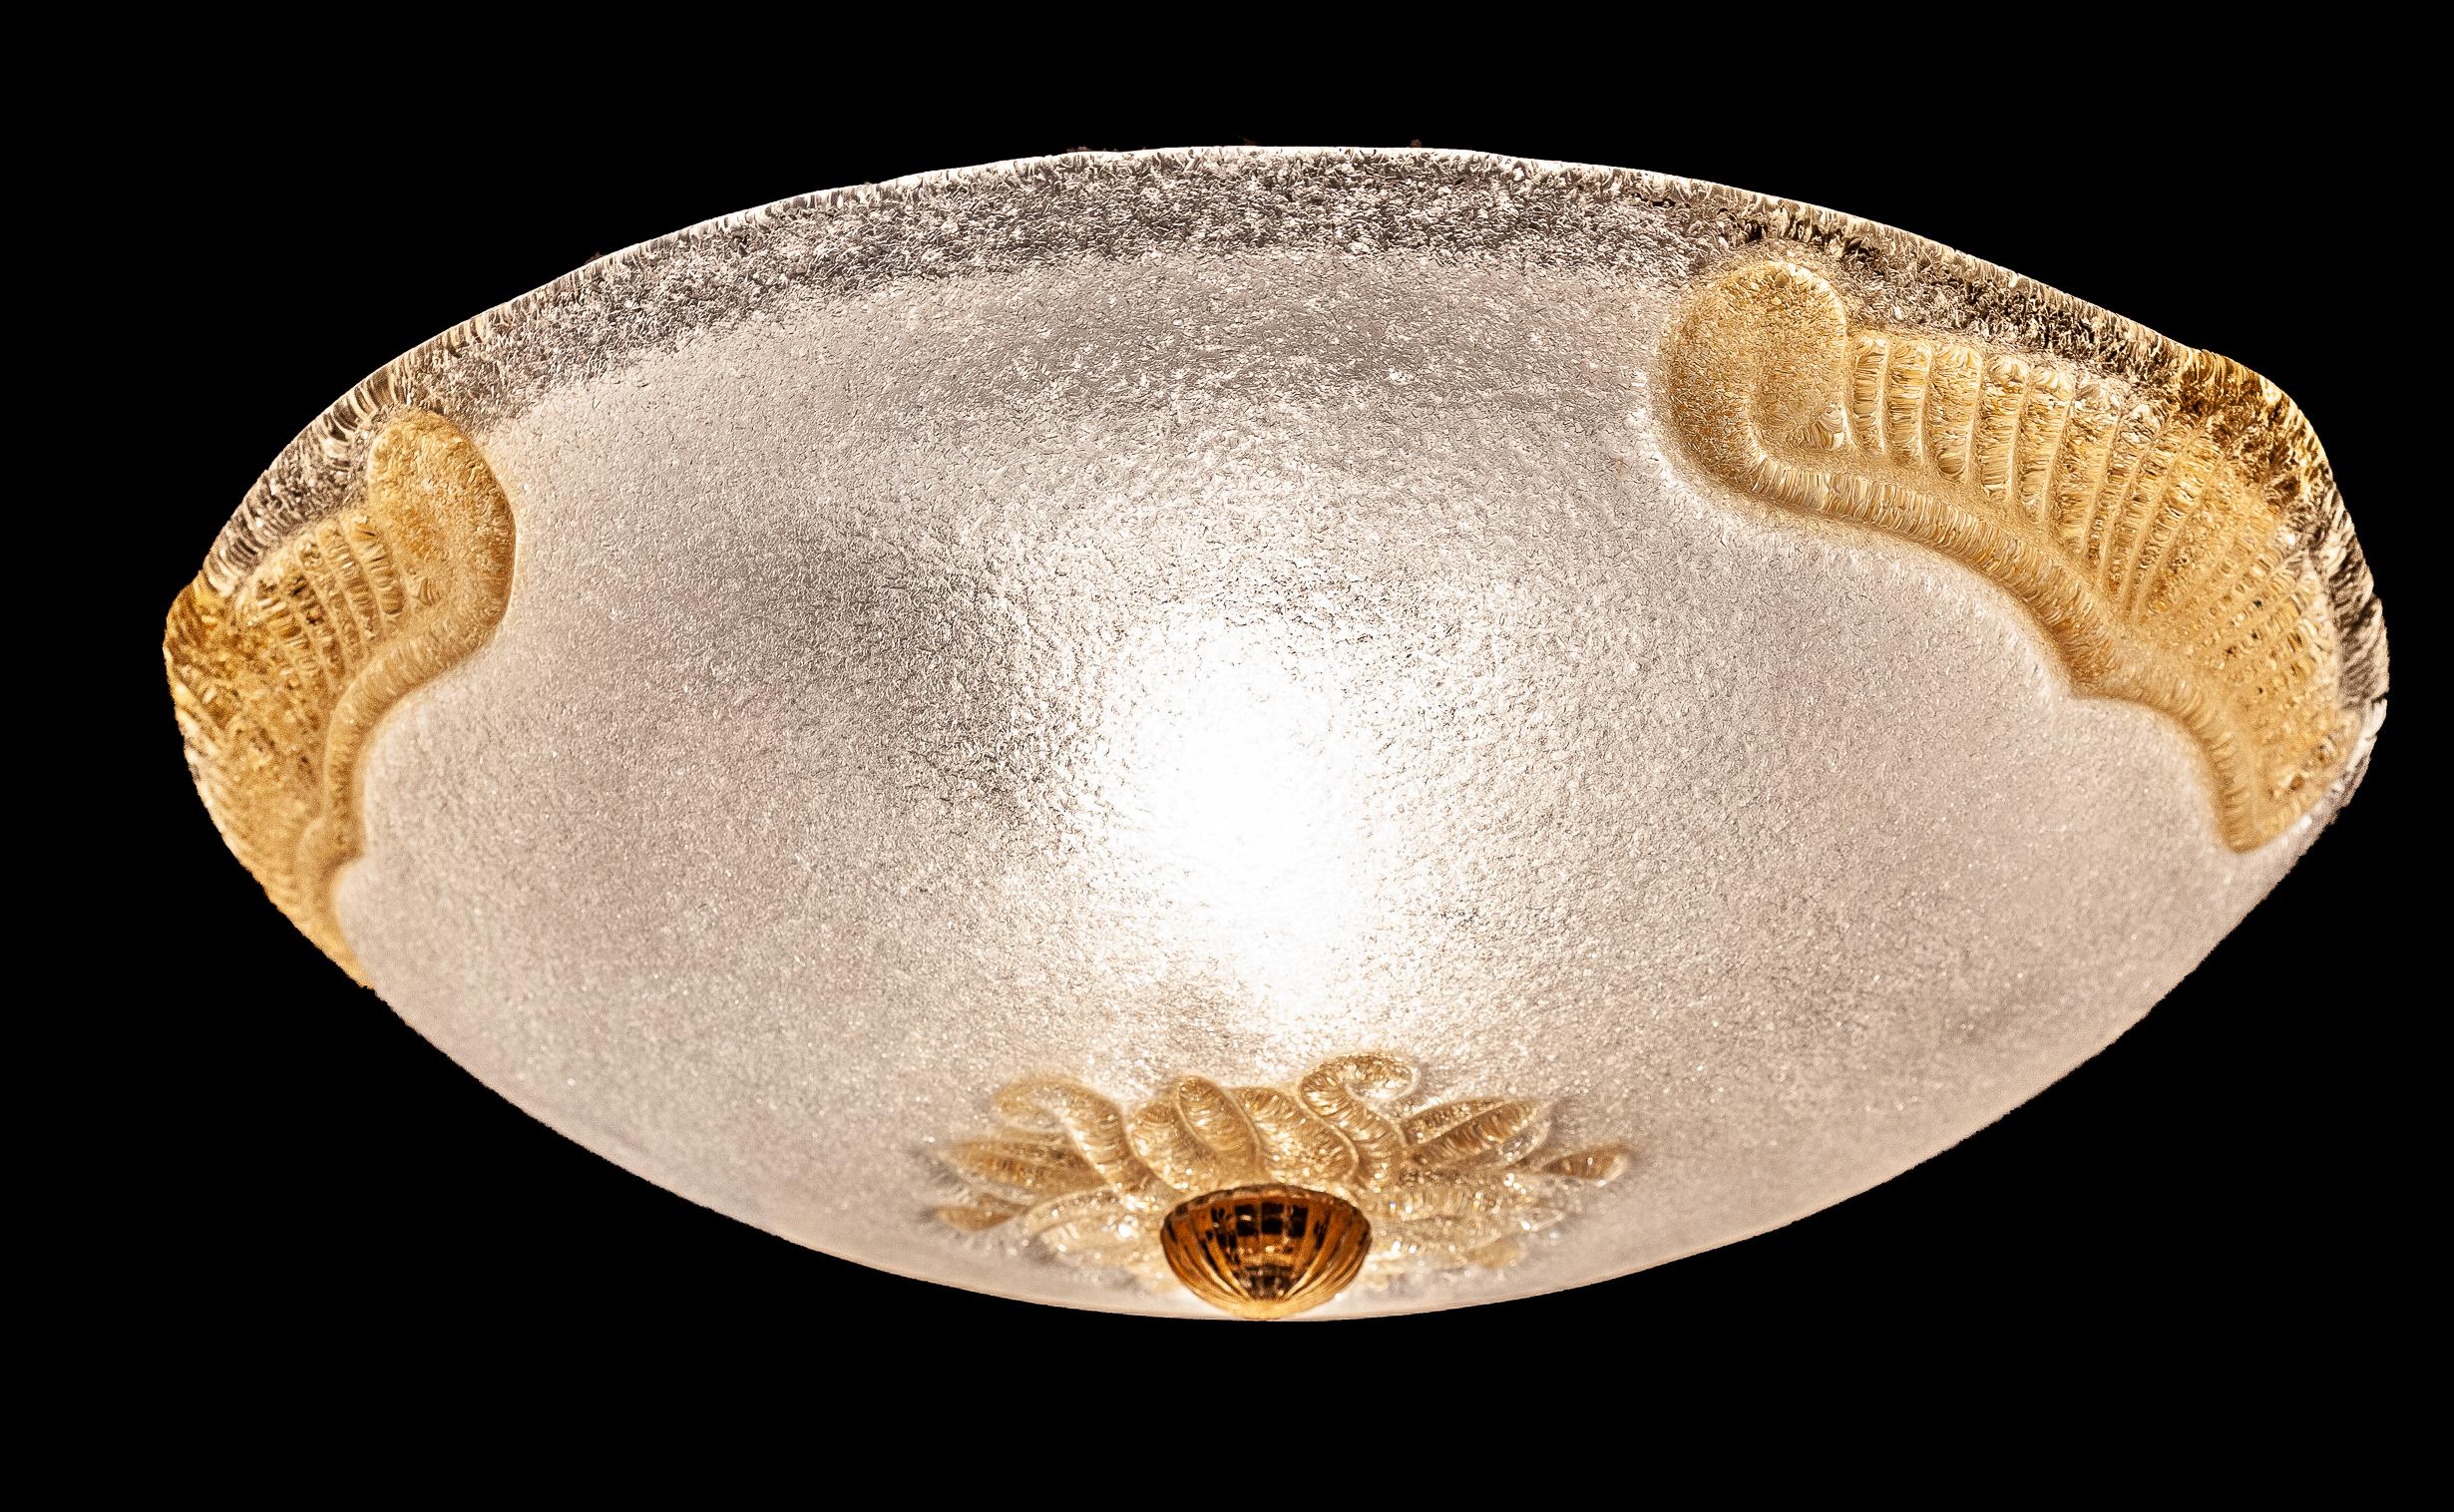 Grande plafoniera in vetro di Murano con inclusioni d'oro, 1970s.
Fine ceiling light with gold inclusions.